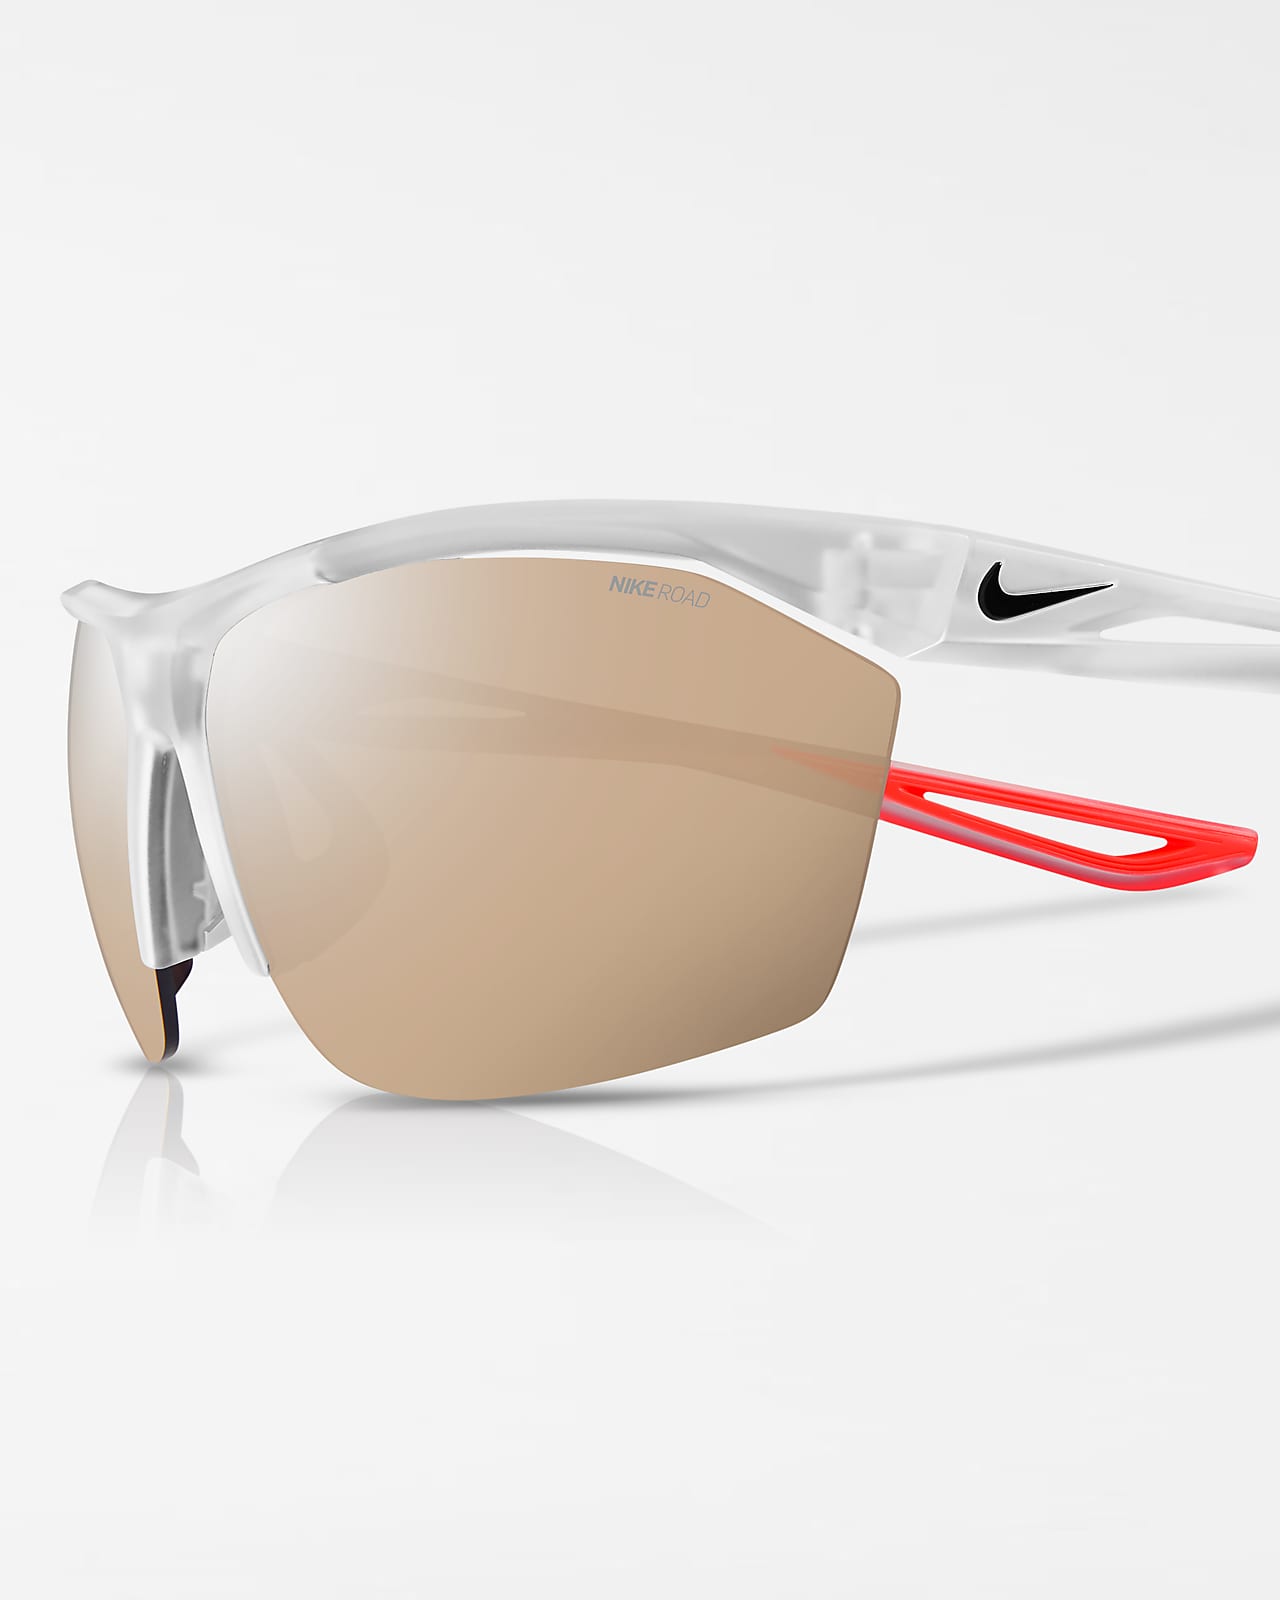 Nike Tailwind Sunglasses (Road Tint)